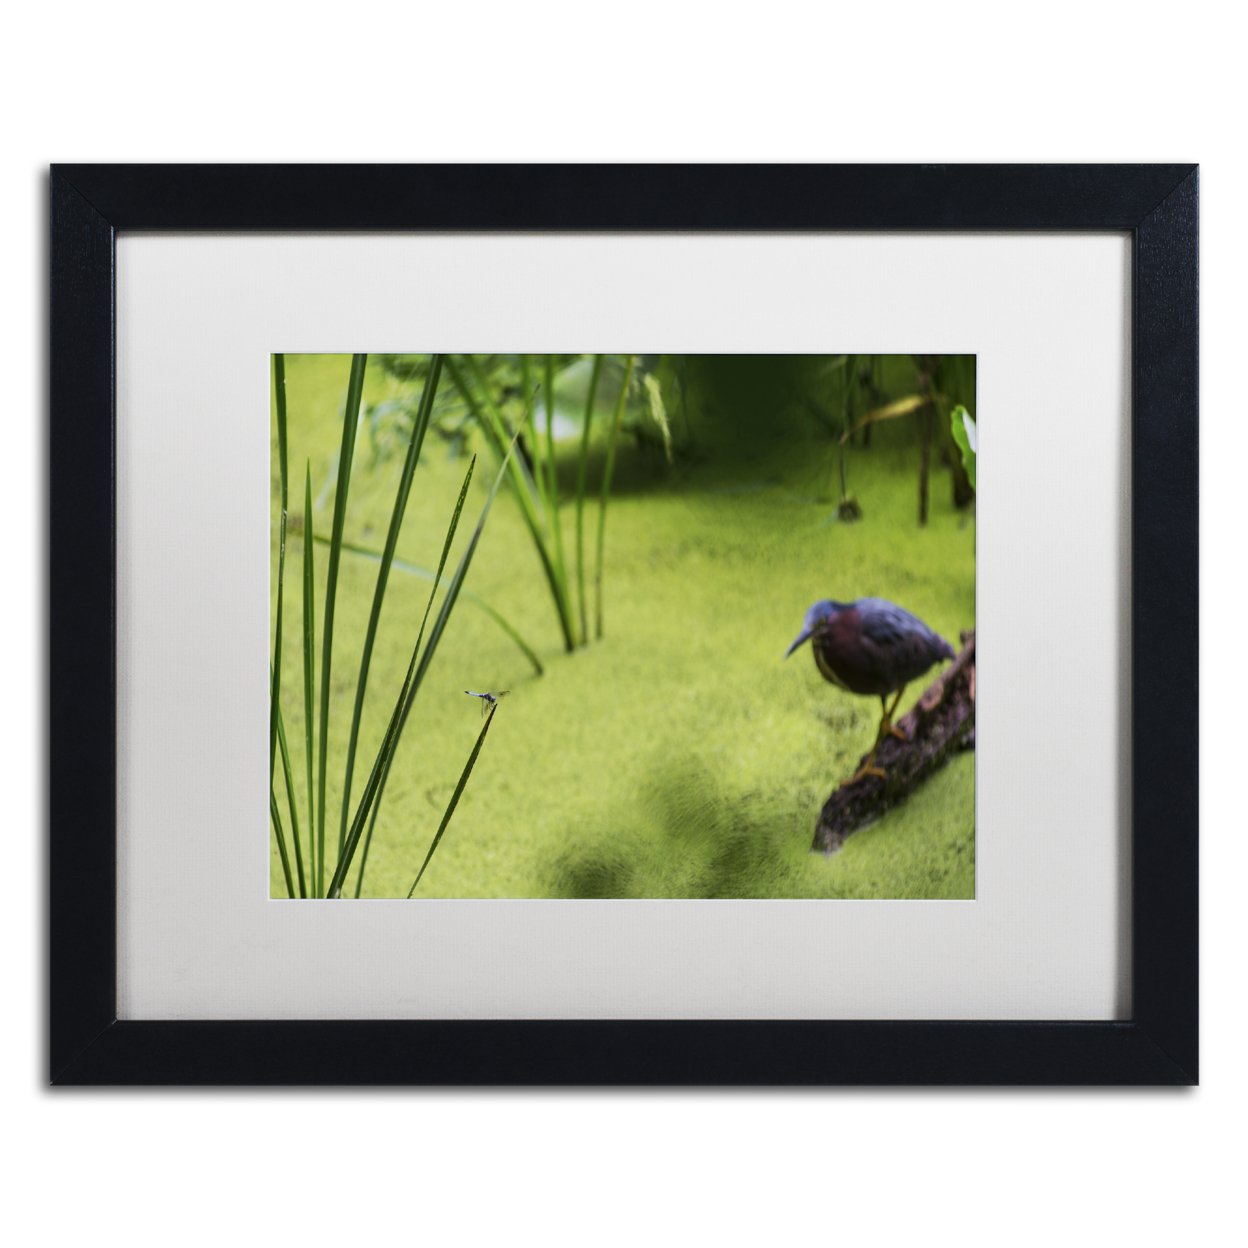 Kurt Shaffer 'Life In The Marsh' Black Wooden Framed Art 18 X 22 Inches